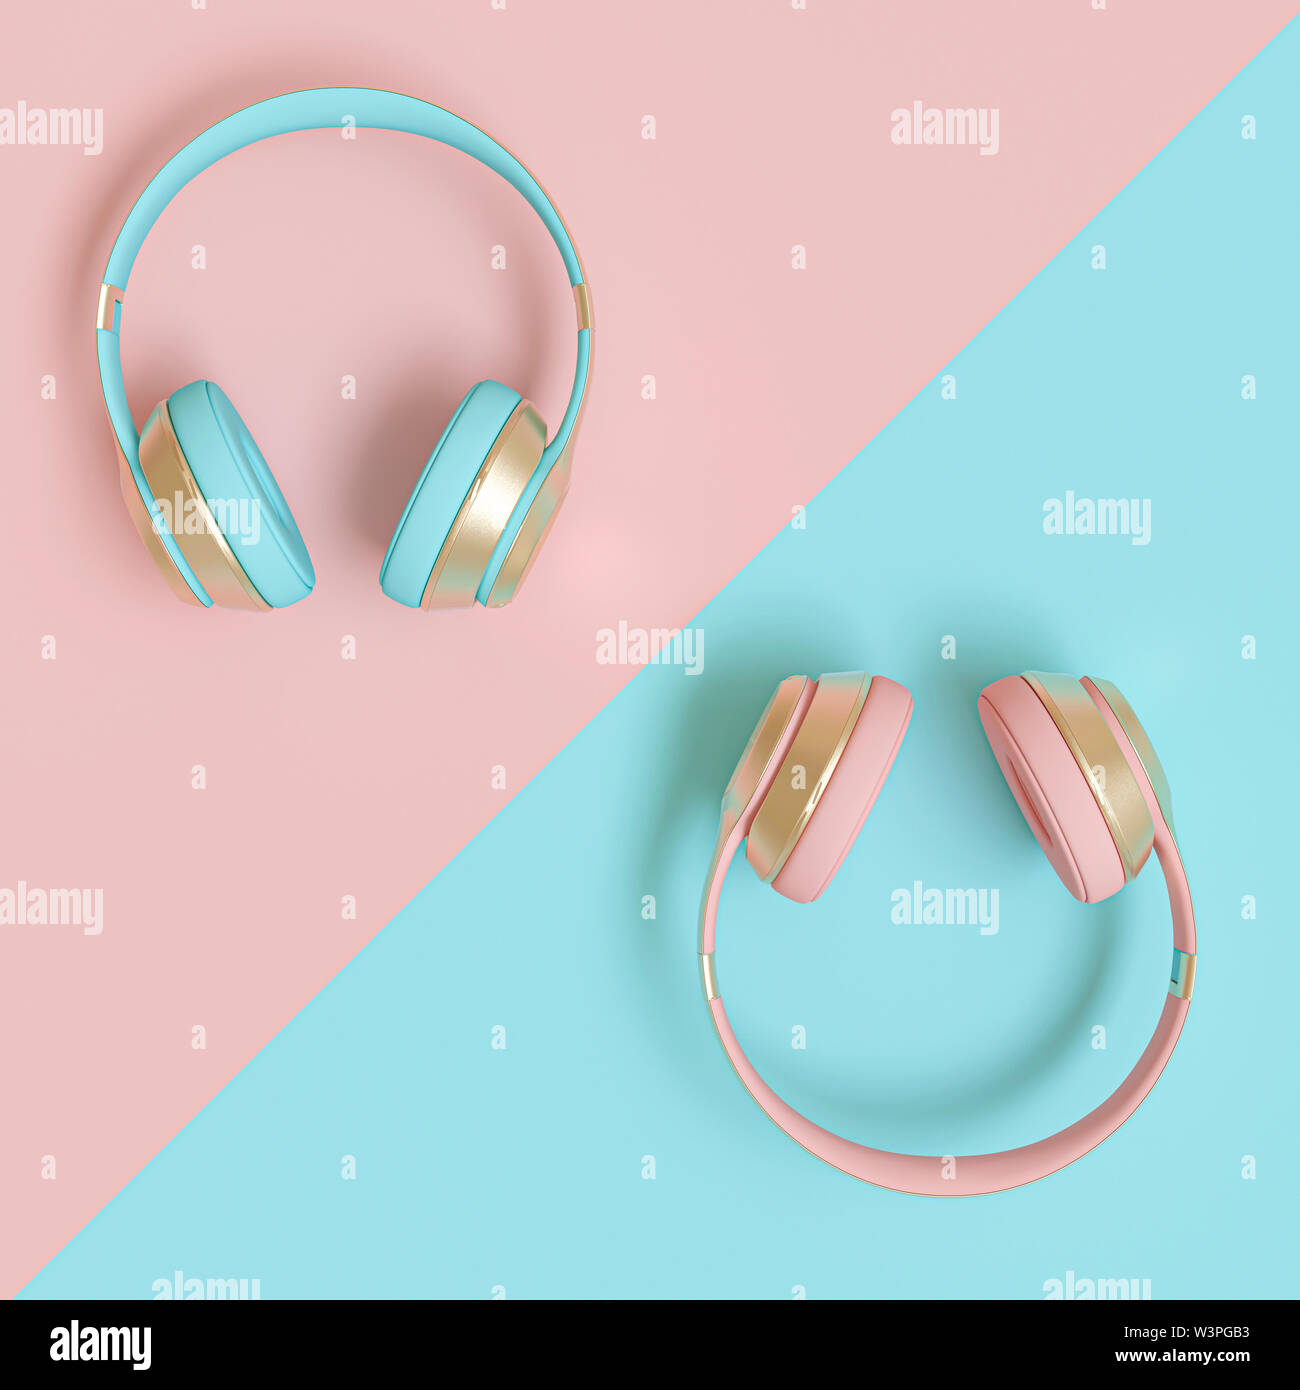 Casque audio modernes en or, rose et bleu sur une mise de fond bicolore. Image 3D render Banque D'Images